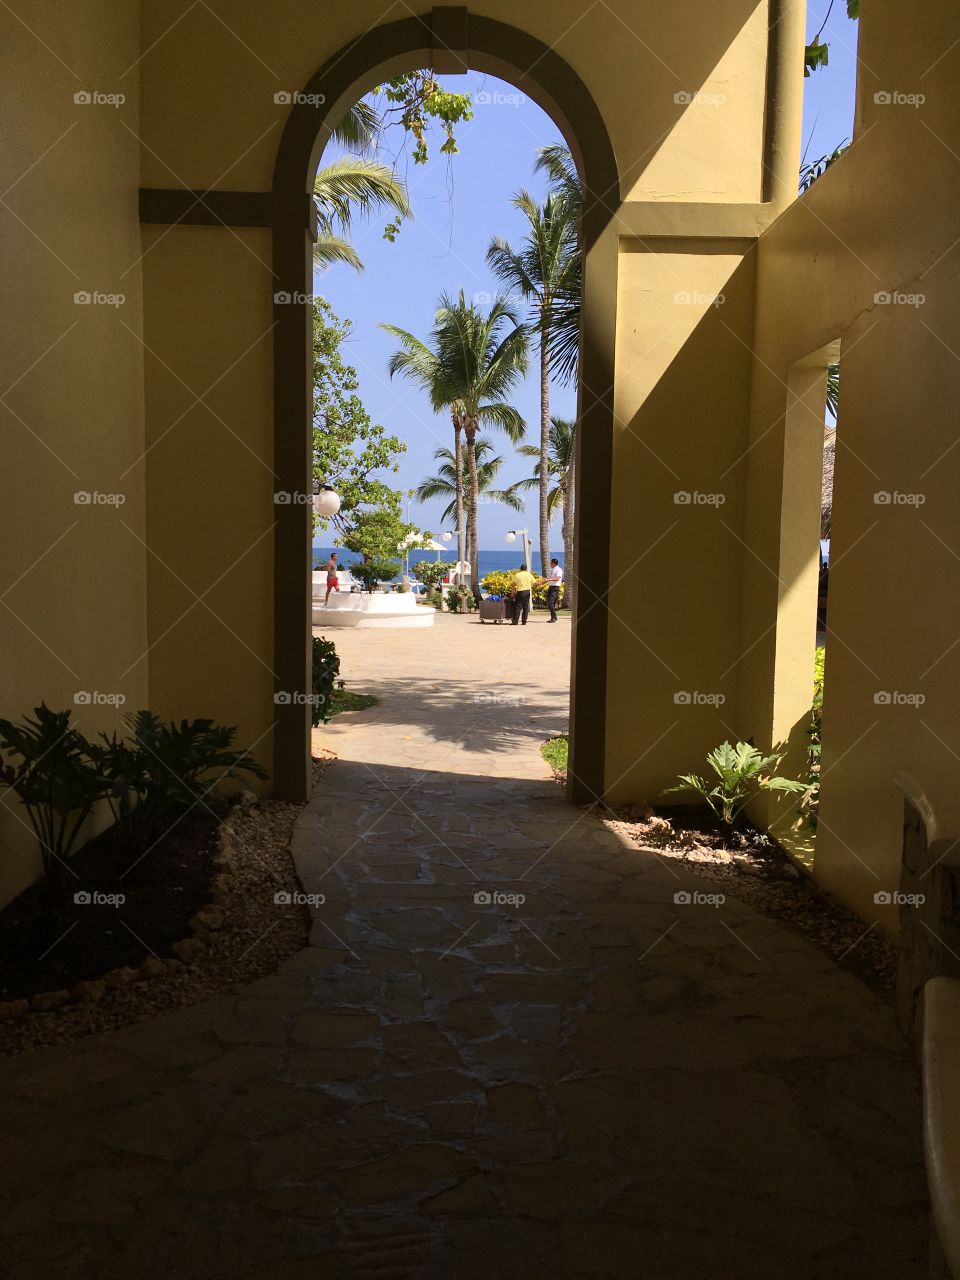 Sosua Resort in the Dominican Republic